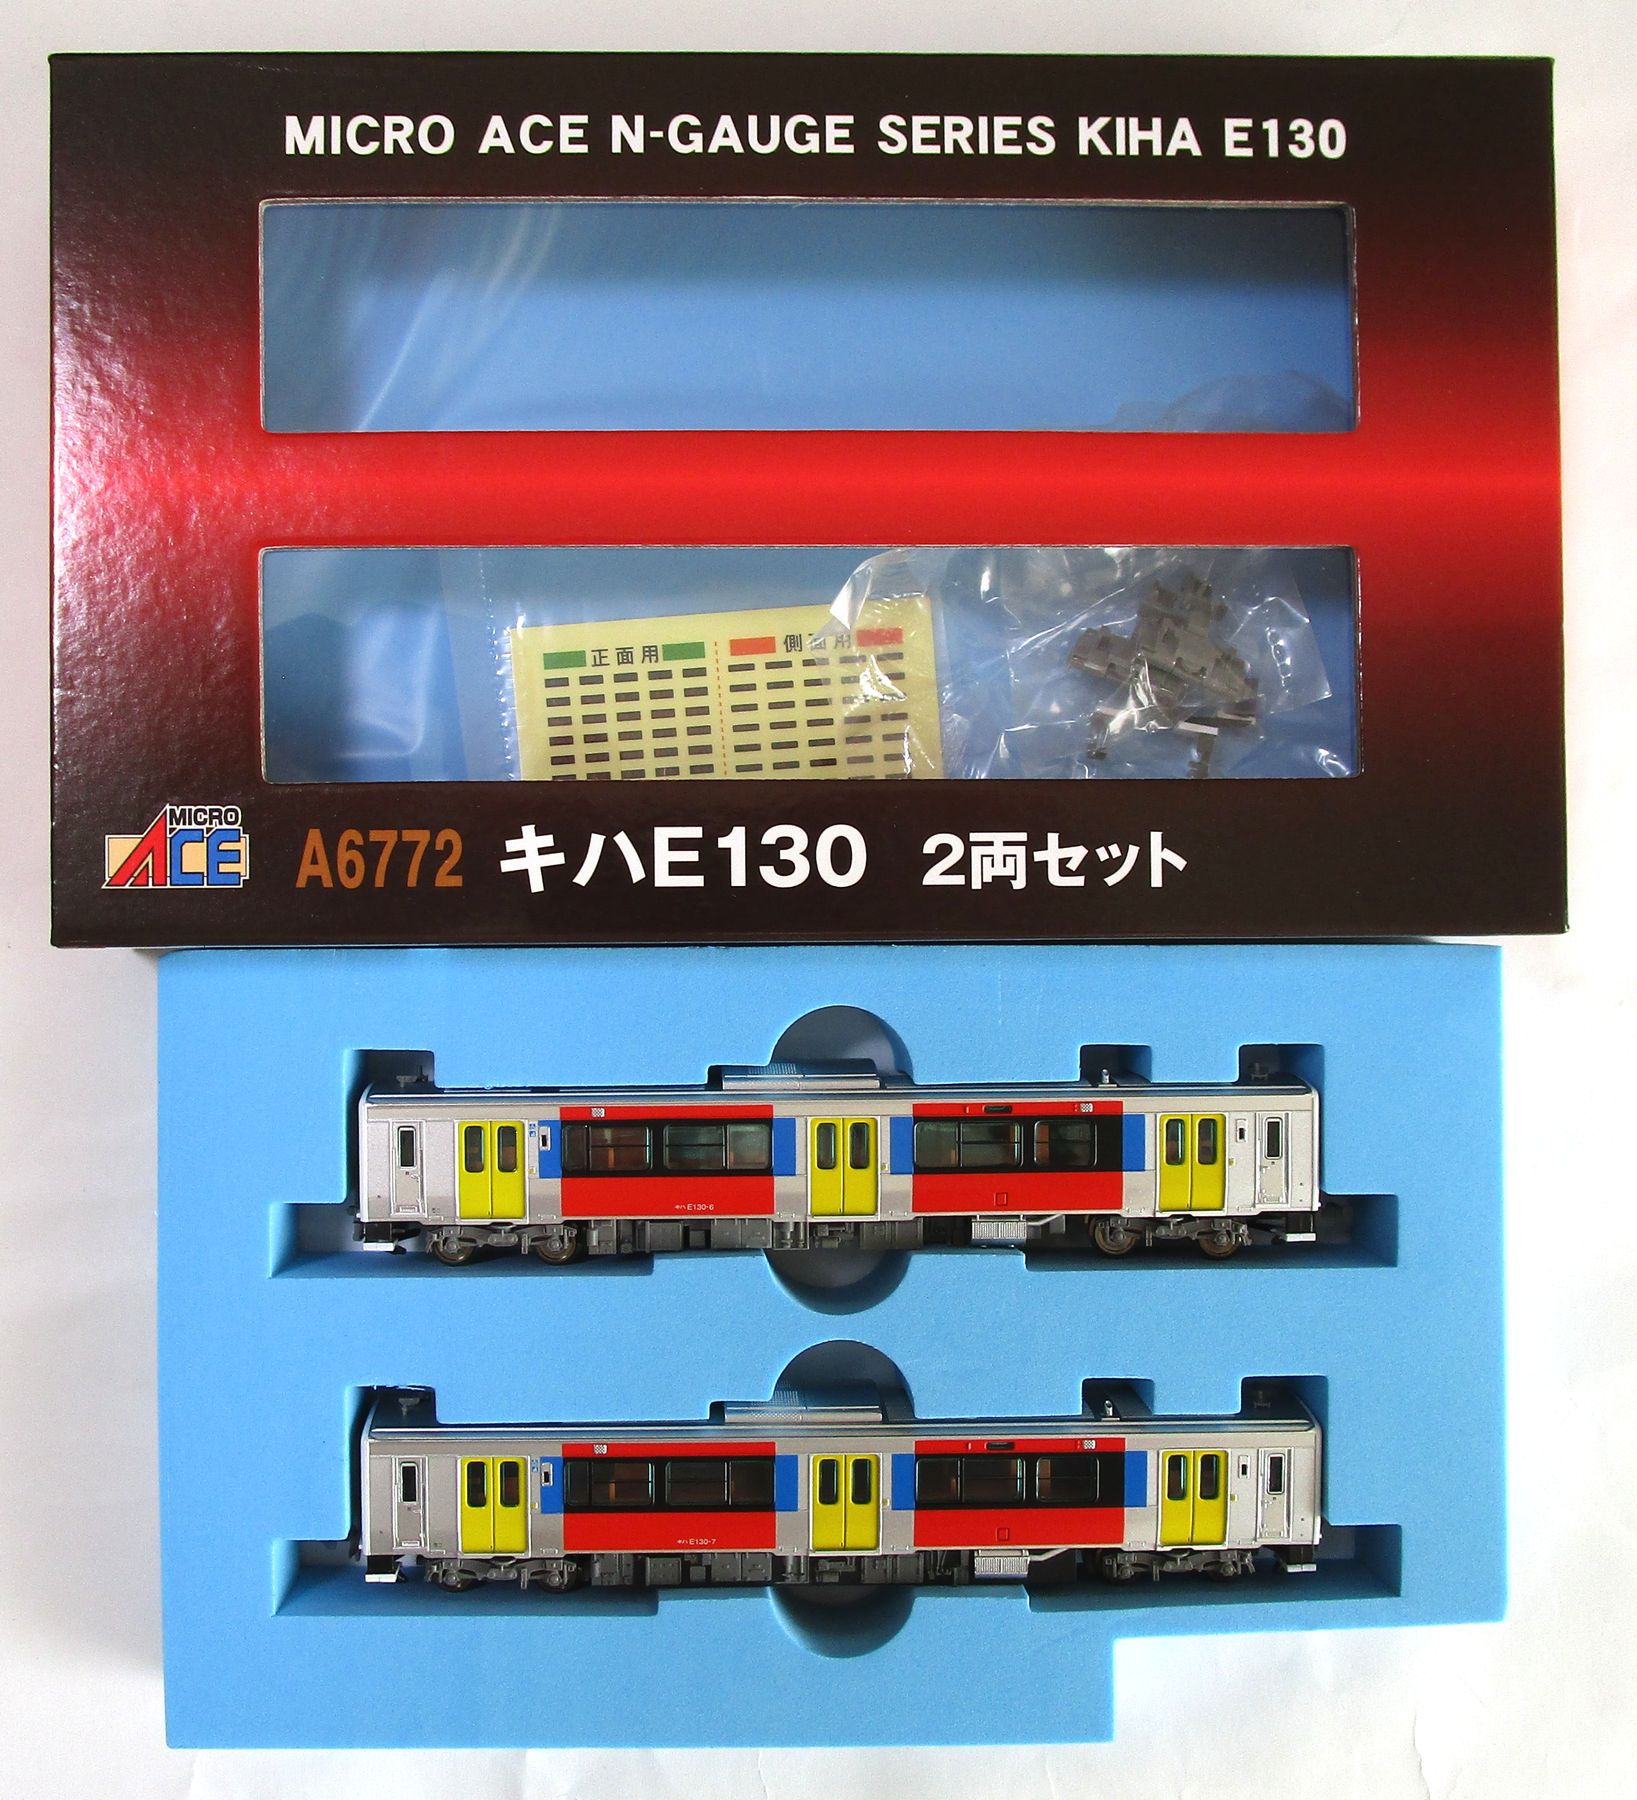 现货A6770 キハE130 2両セット(動力付き) Nゲージ 鉄道模型 MICRO ACE(マイクロエース) ディーゼルカー